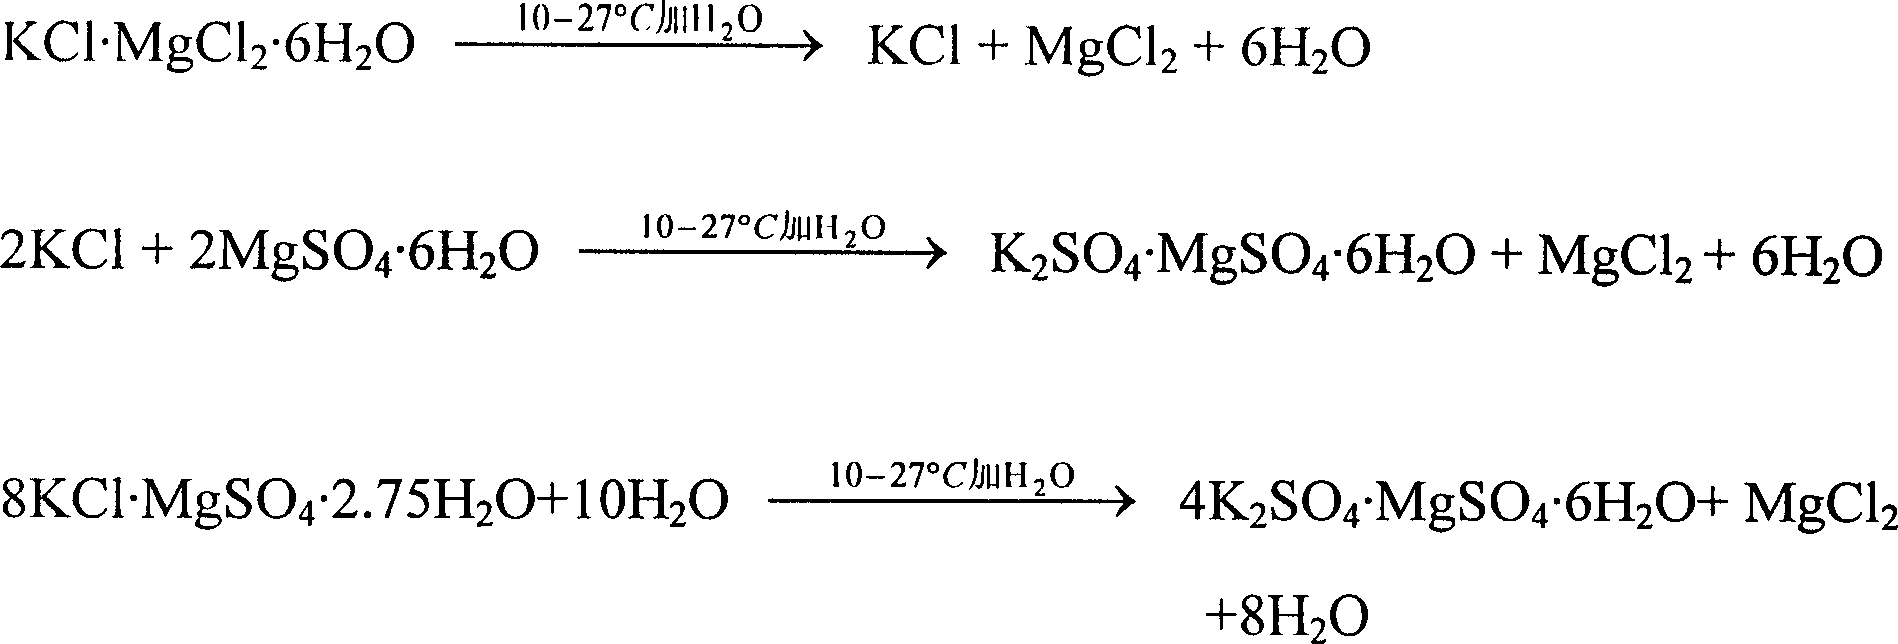 Process of preparing magnesium potassium sulfate fertilizer with bittern potassium containing magnesium sulfite